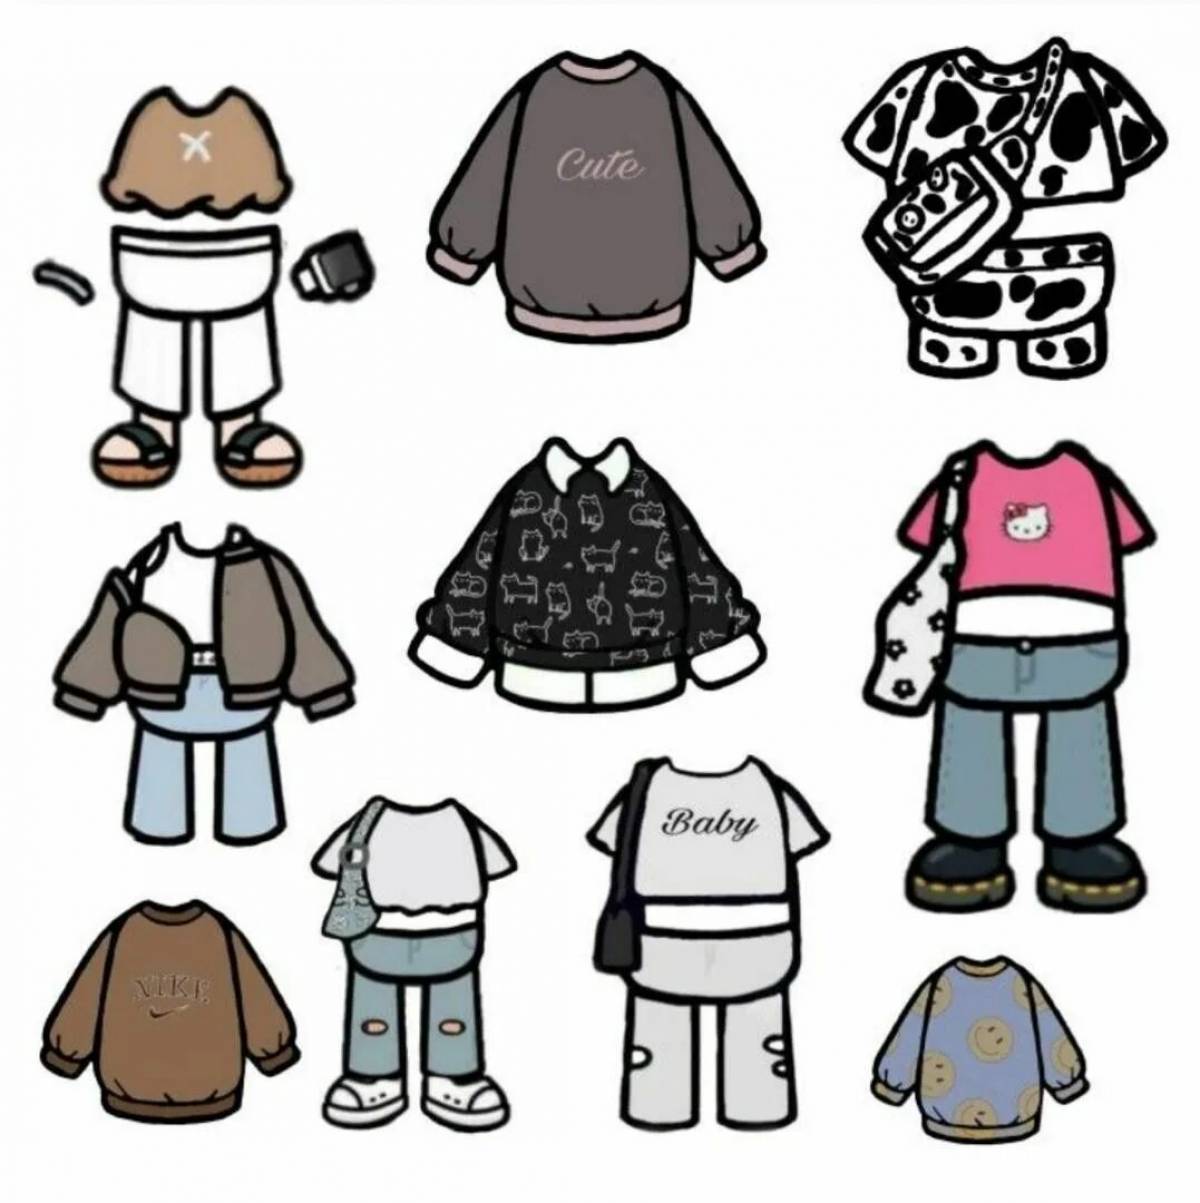 Toki boki clothes #8